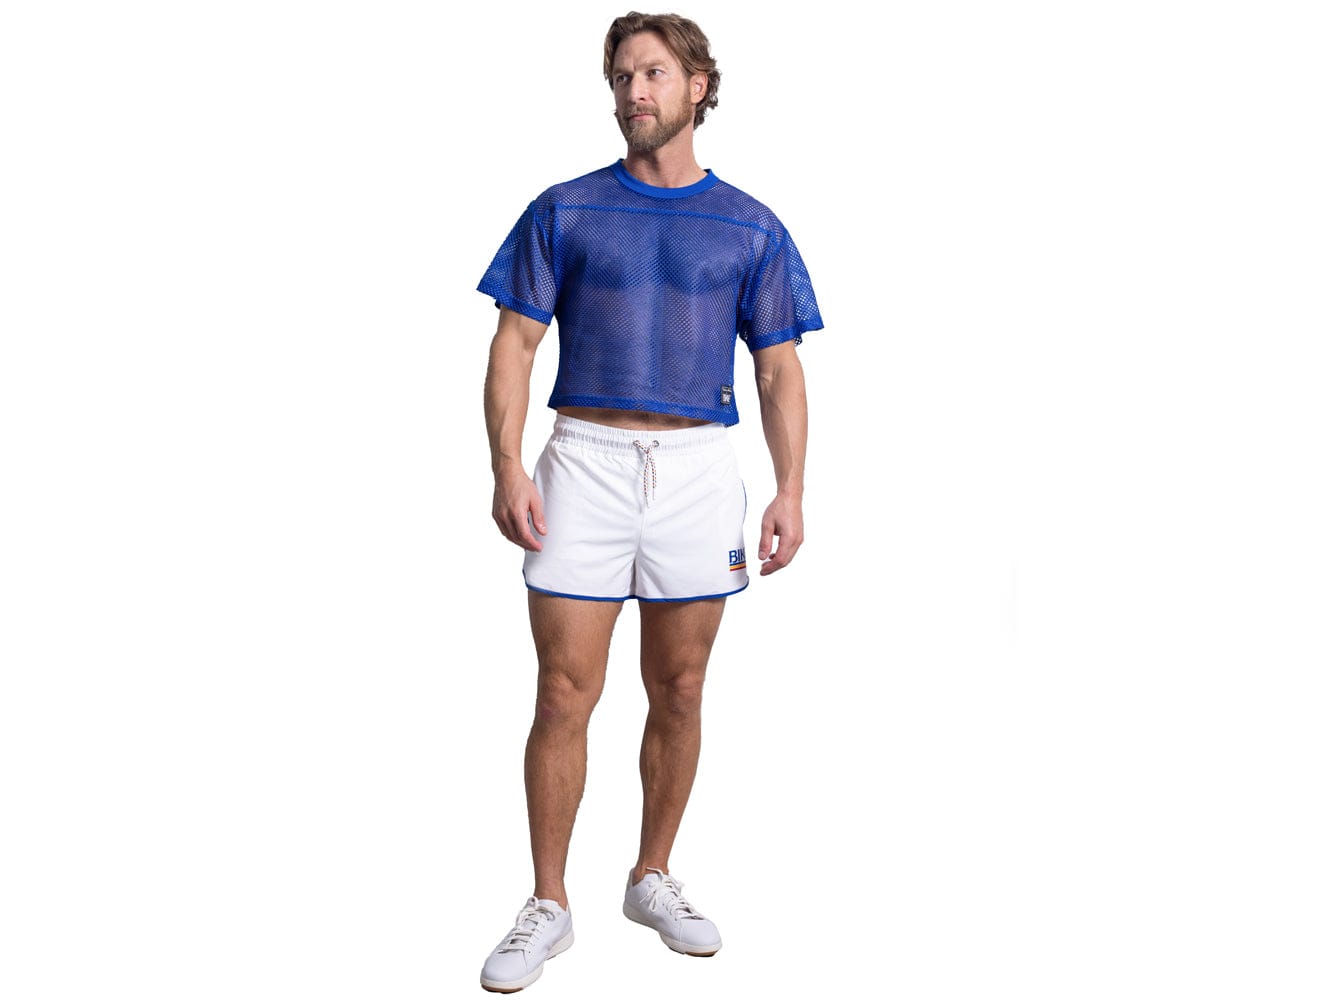 Man wearing royal blue BIKE® mesh shirt